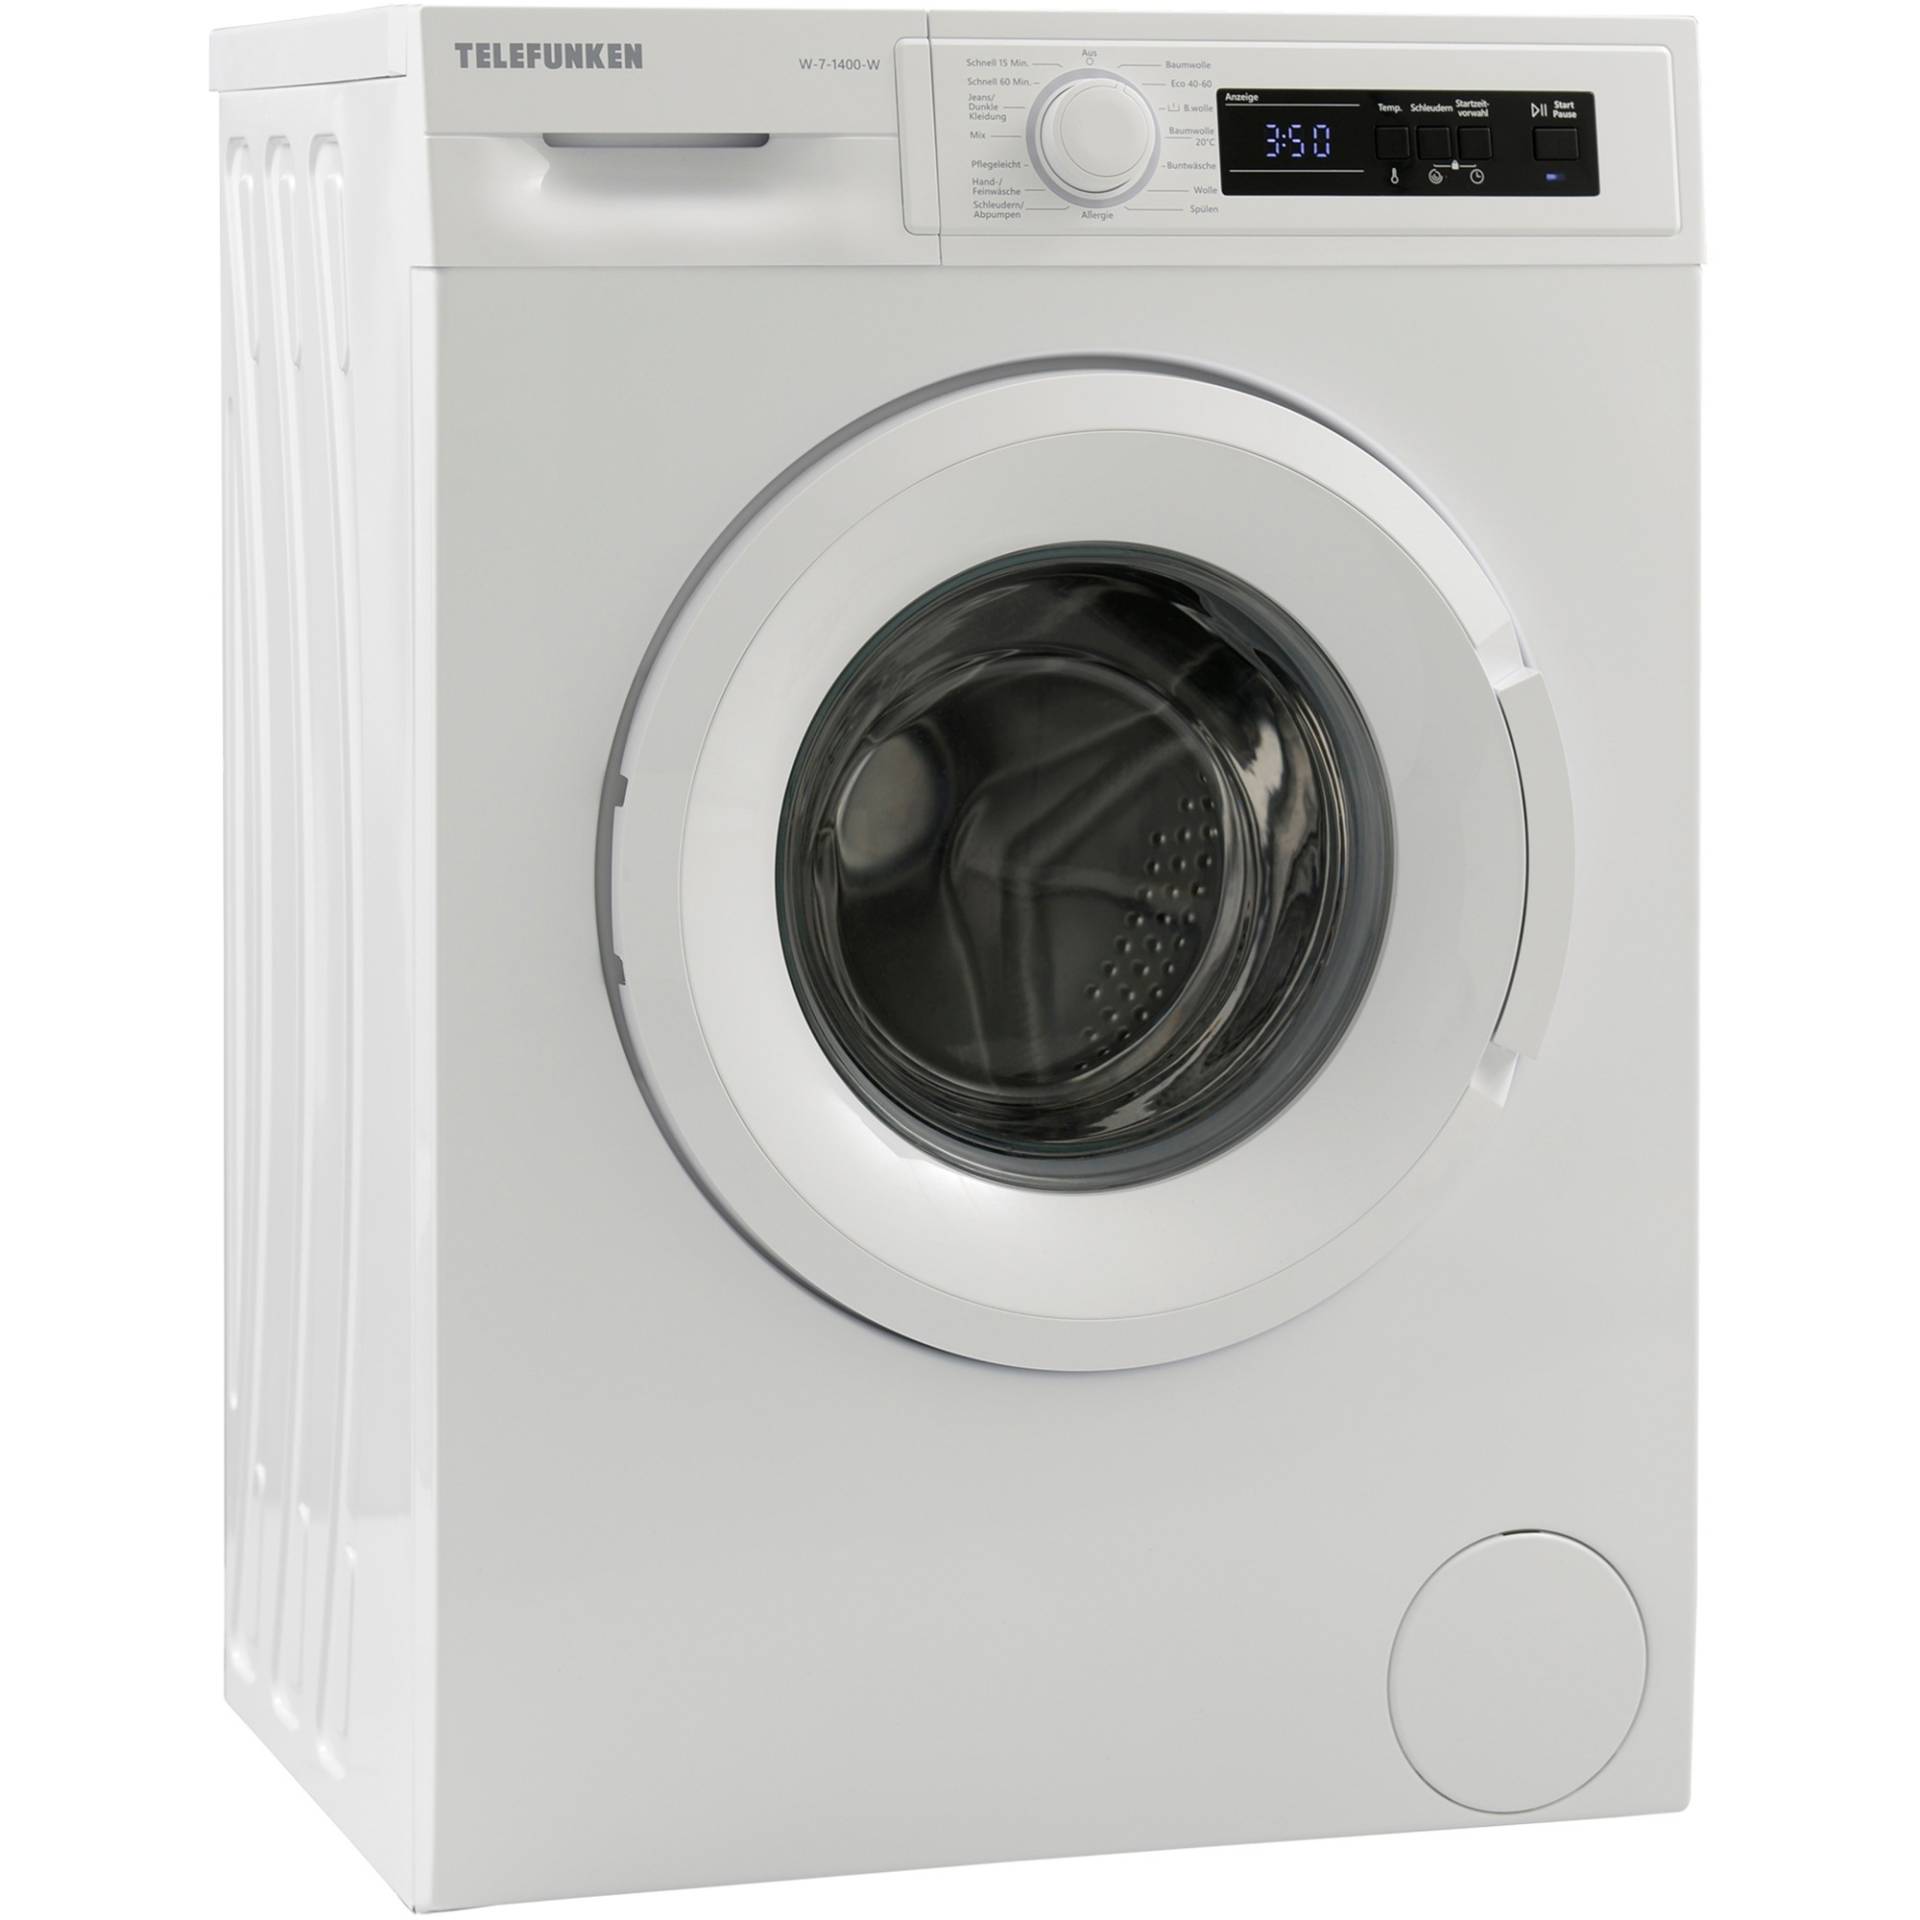 W-7-1400-W, Waschmaschine von Telefunken